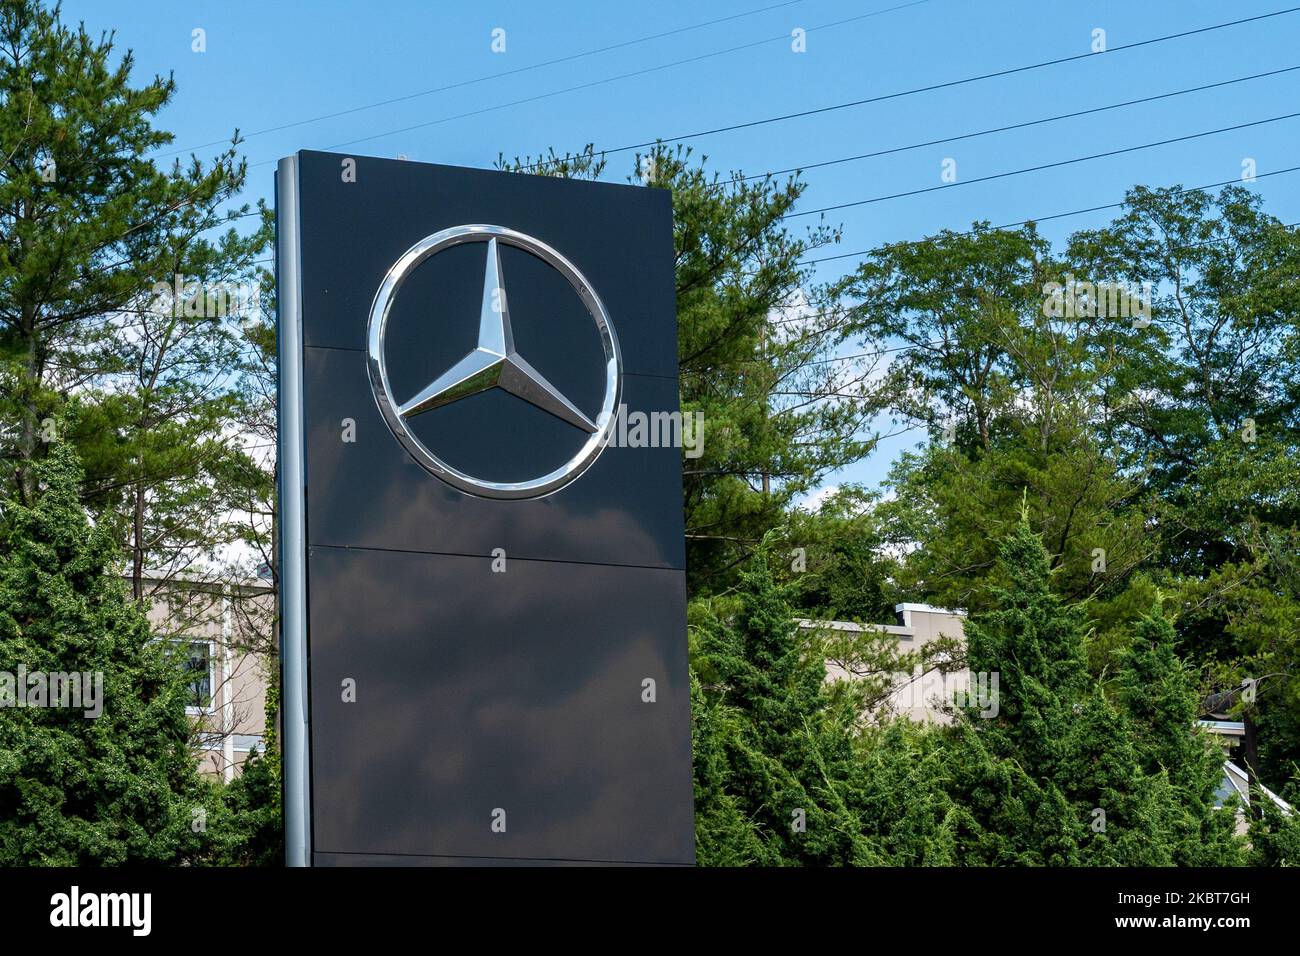 Una visione della concessionaria Mercedes-Benz a Queens, New York, USA., il 4 luglio 2020. (Foto di John Nacion/NurPhoto) Foto Stock